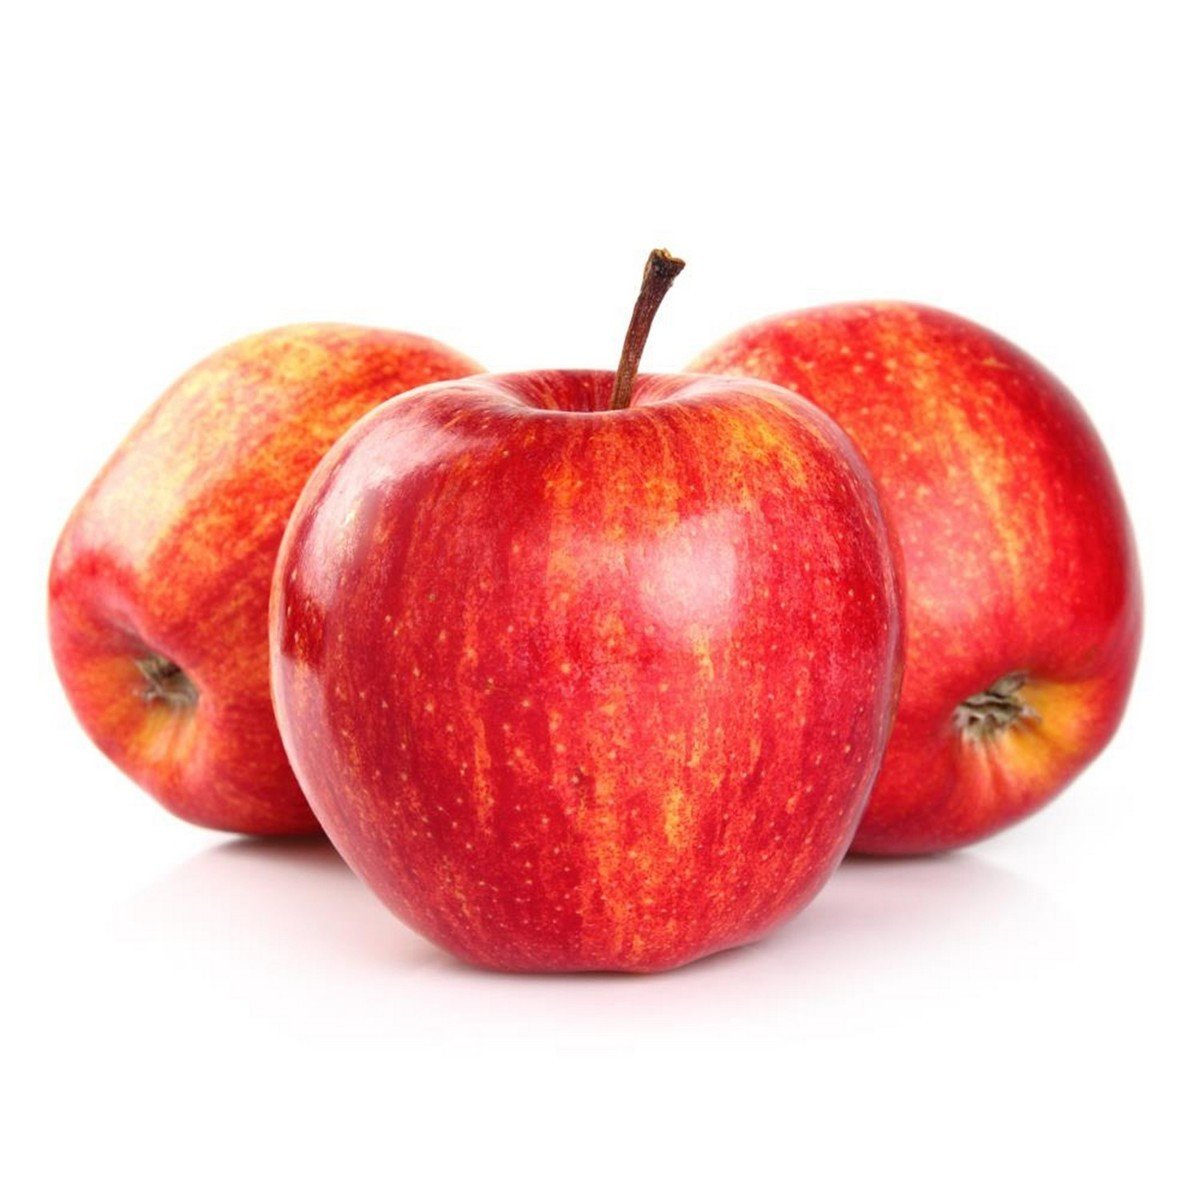 Buy Apple Royal Gala South Africa 1 kg Online at Best Price | Apples | Lulu KSA in UAE